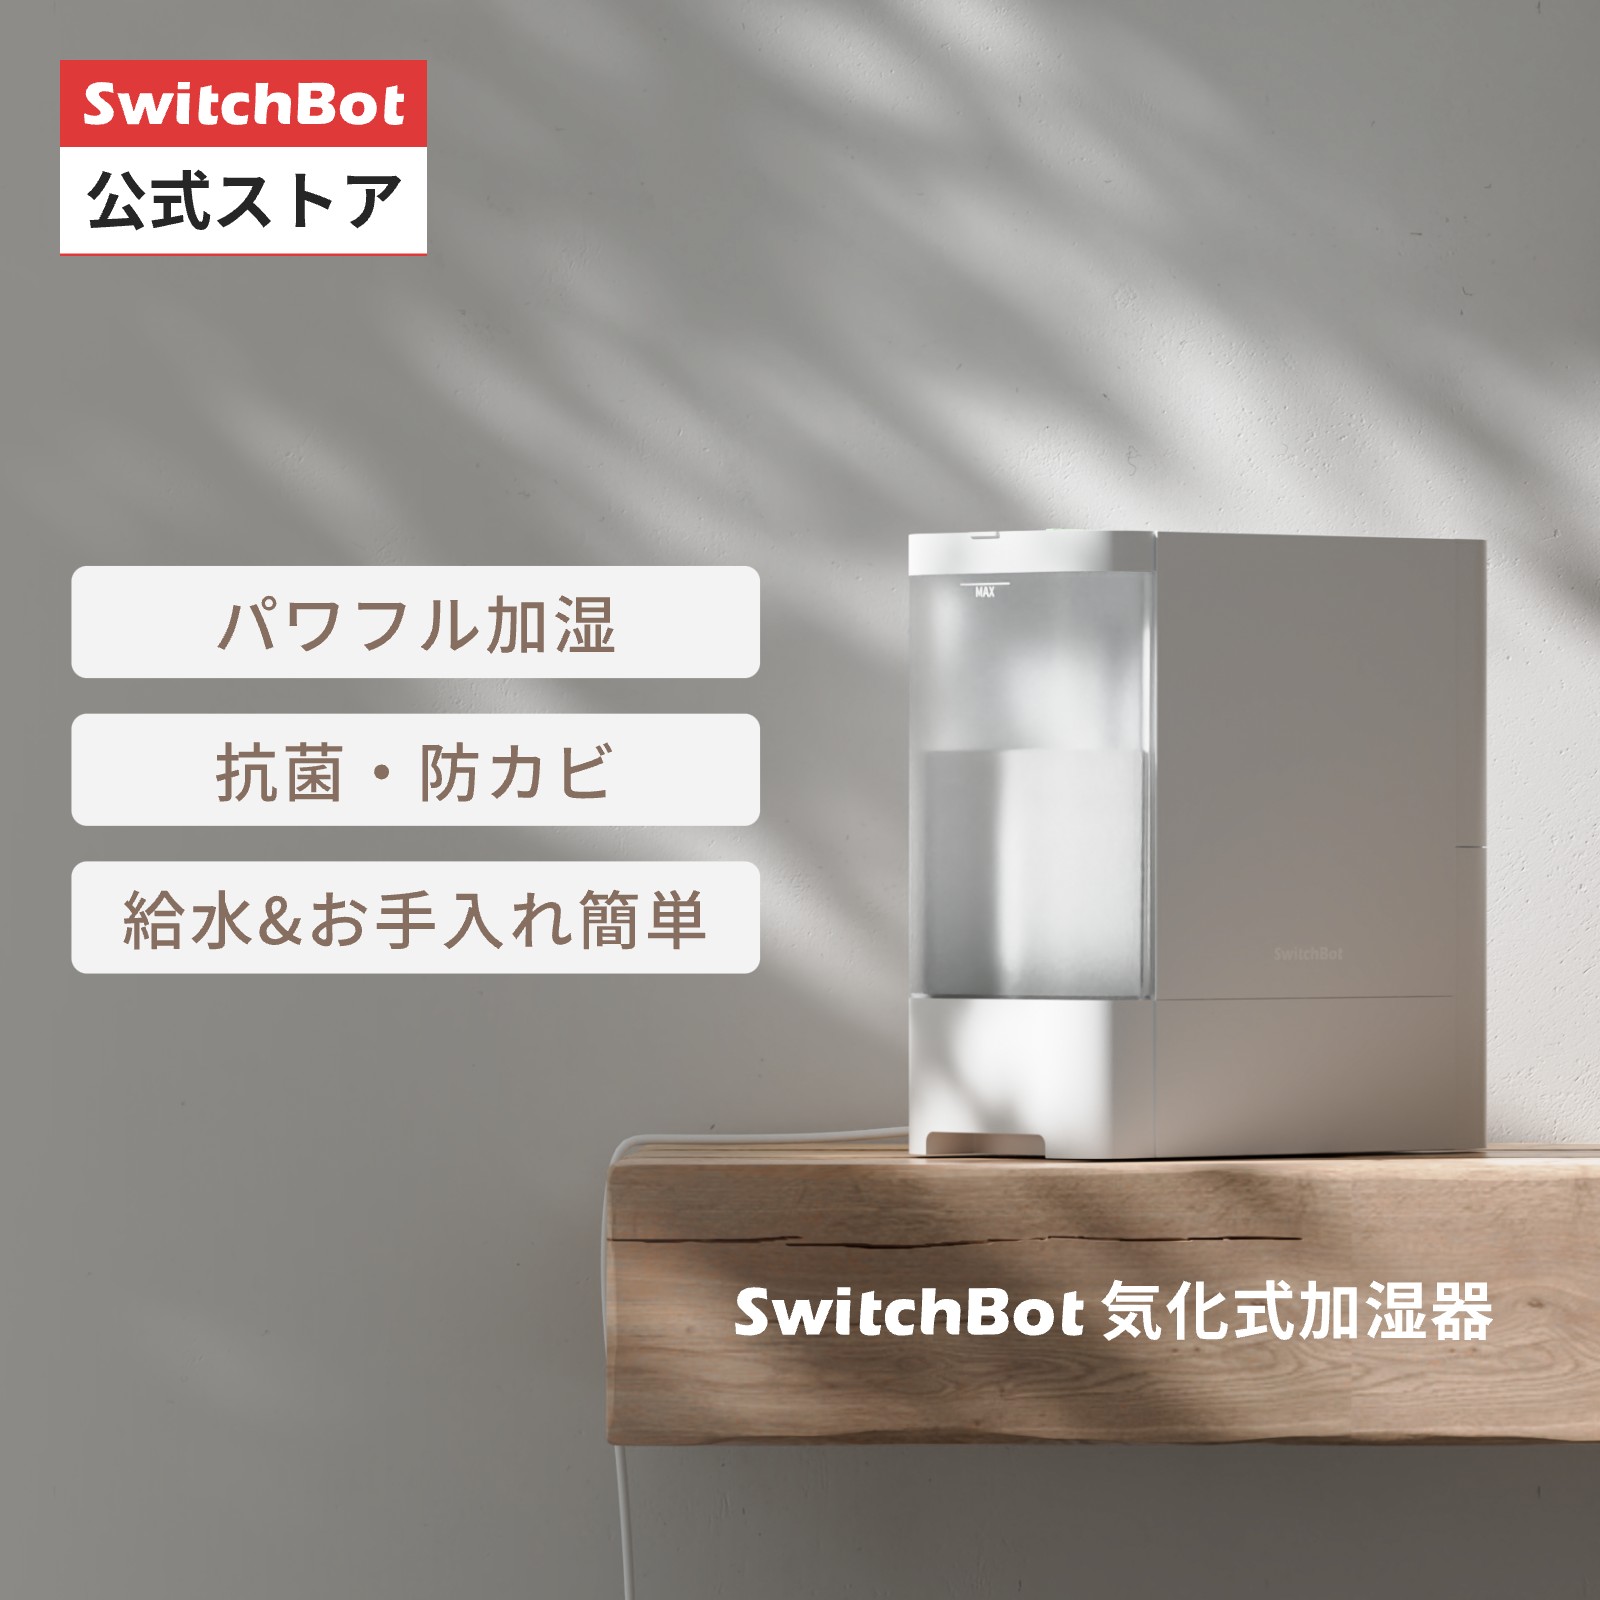 SwitchBot 気化式加湿器 アレクサ 大容量 - 4.